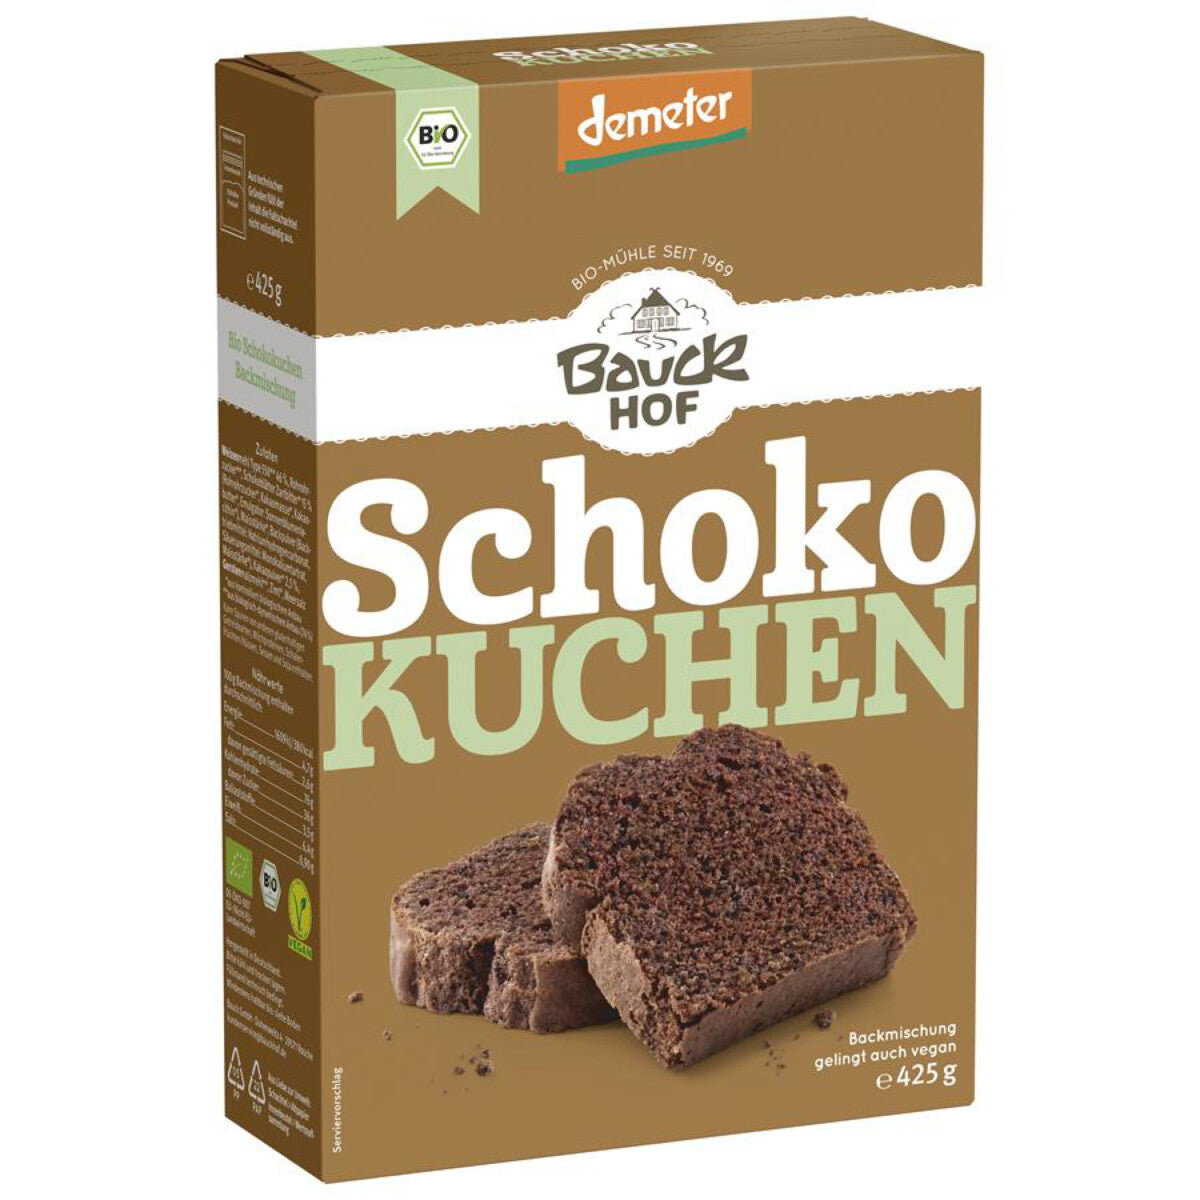 BAUCKHOF Schoko-Kuchen Backmischung - 425 g